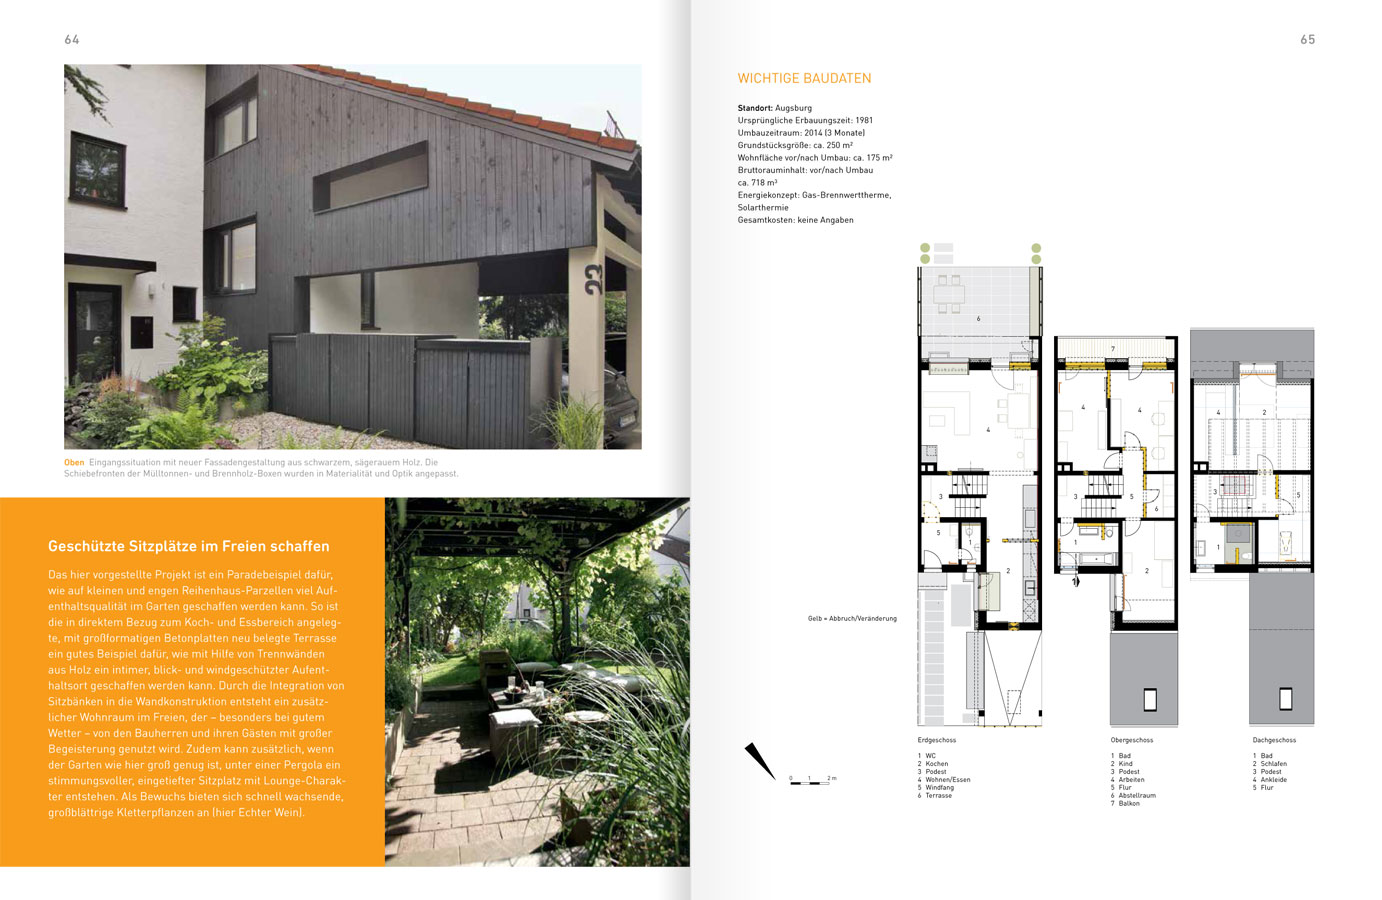 Hicker architekten Presse - Auszug aus dem Buch von Thomas Drexel 2017: Reihen- und Doppelhäuser umbauen, modernisieren und erweitern" mit Haus 23